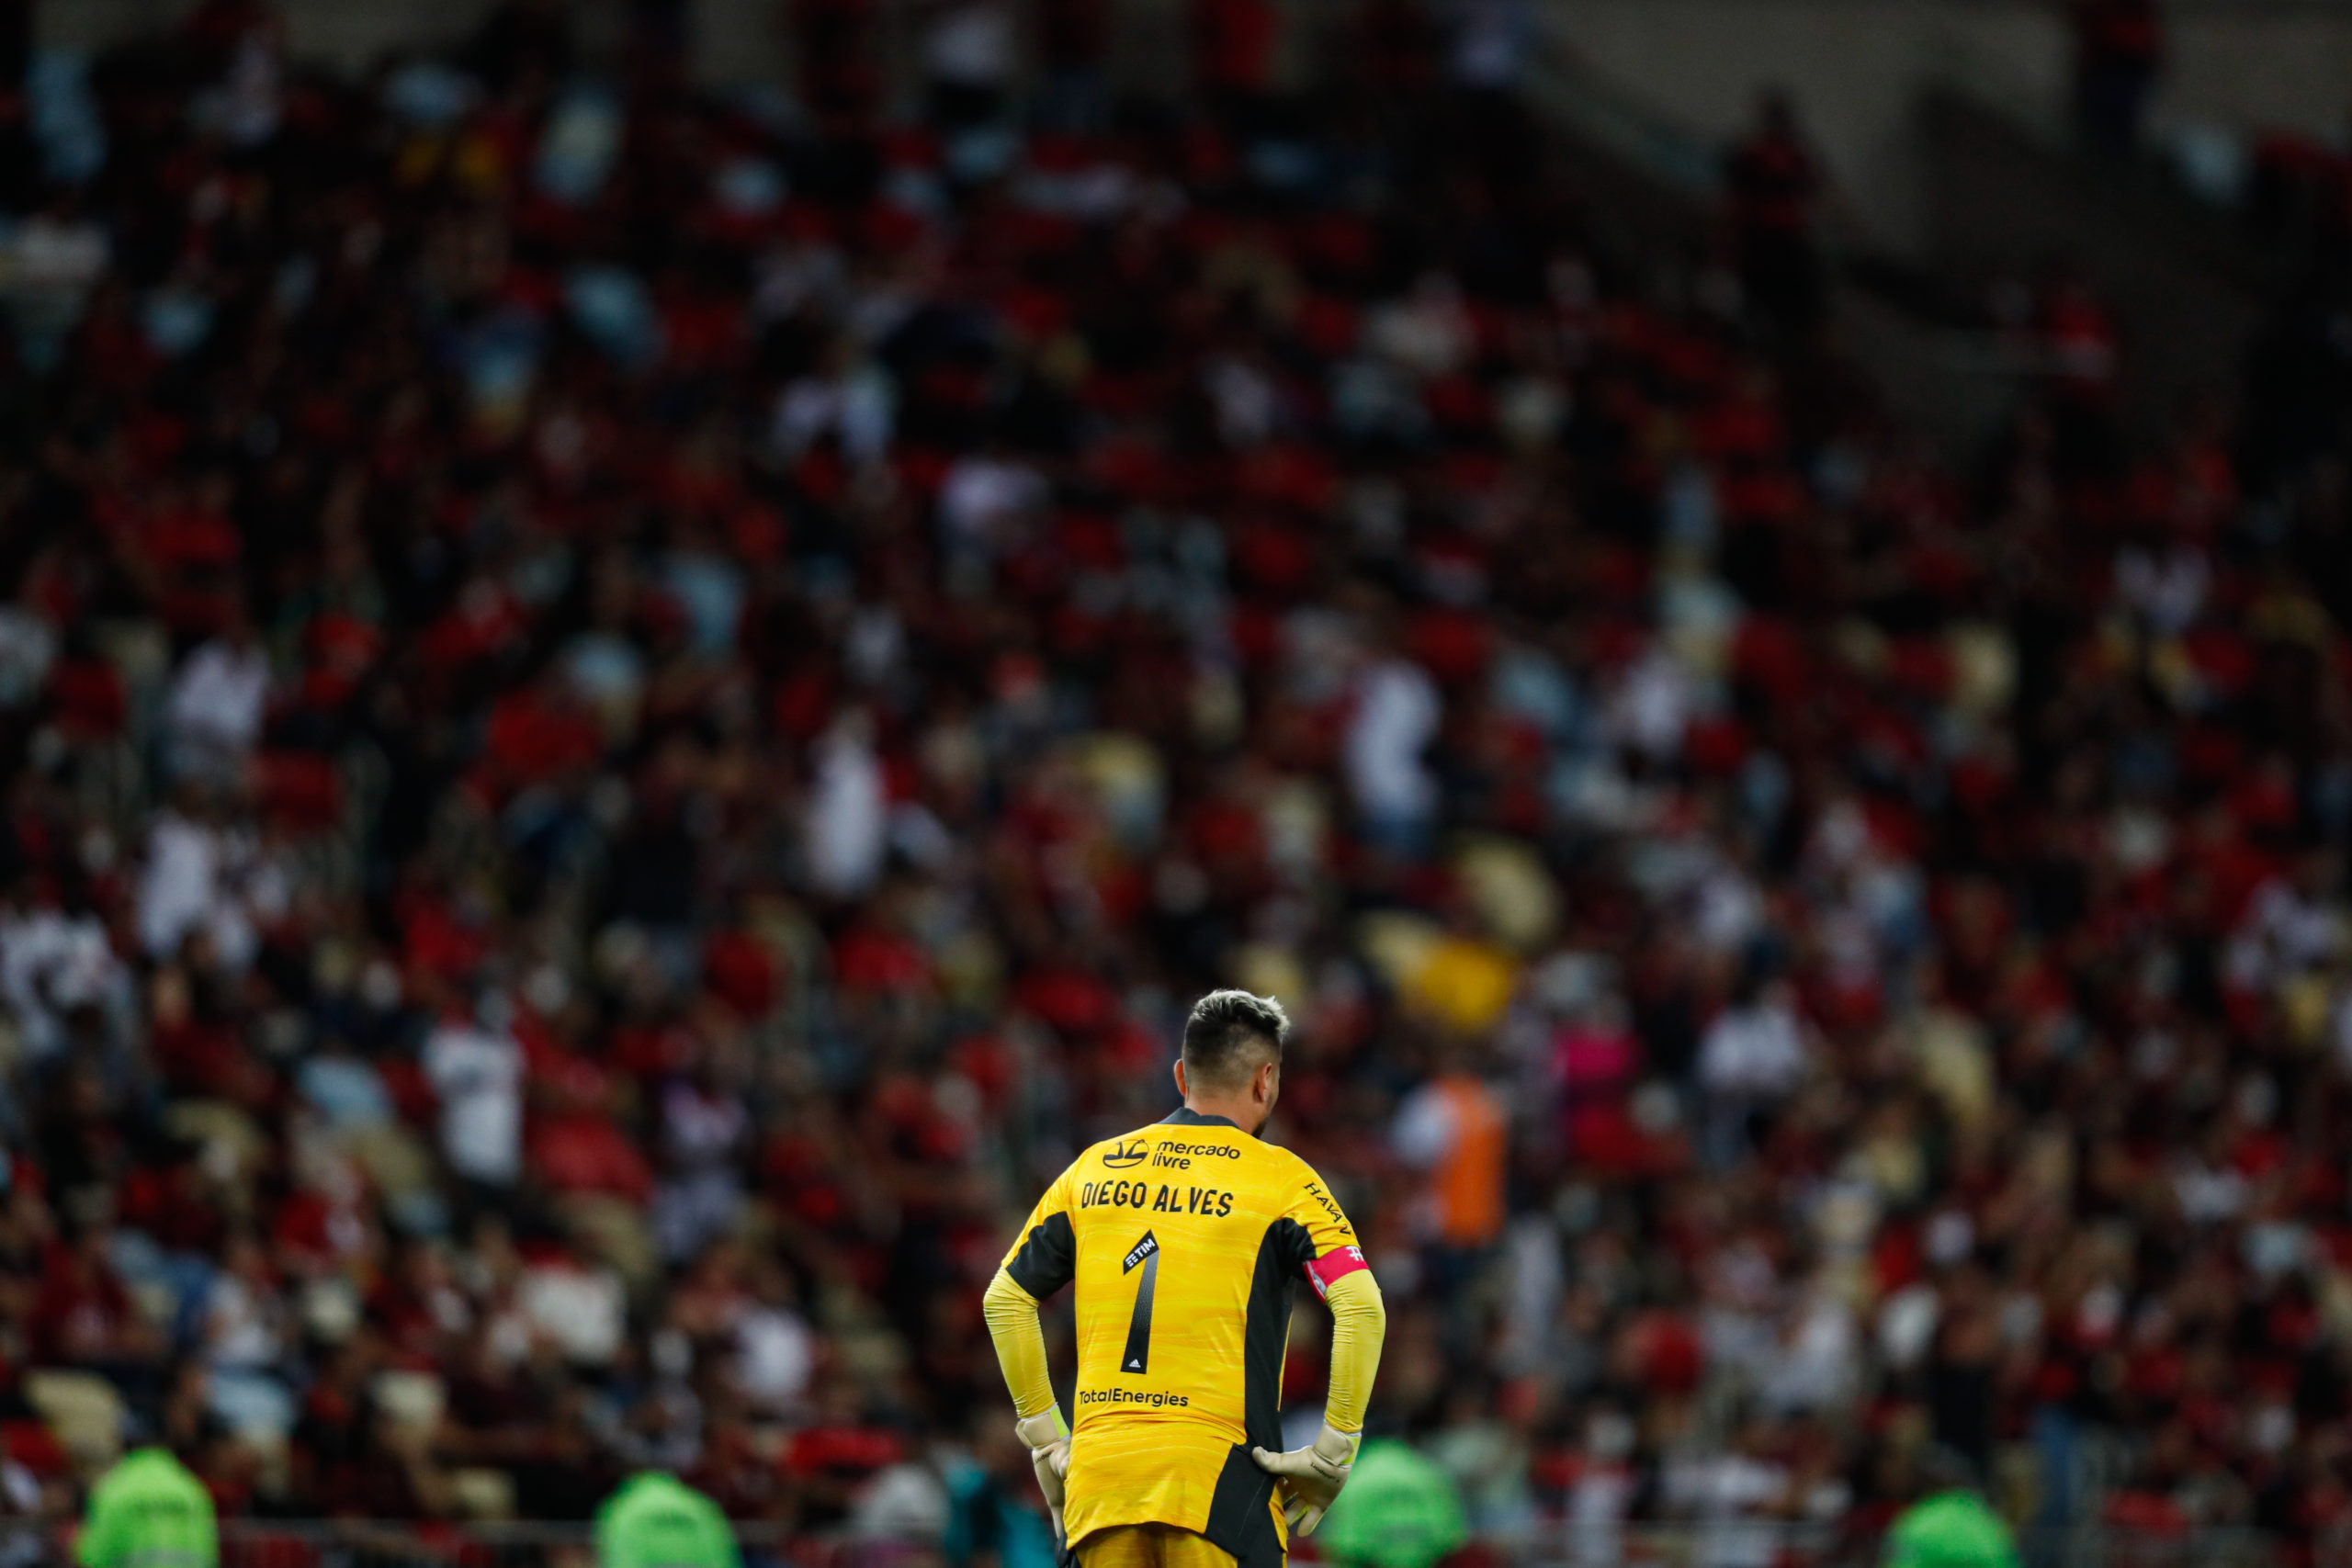 Diego Alves e a torcida do Flamengo desfocada ao fundo no estádio